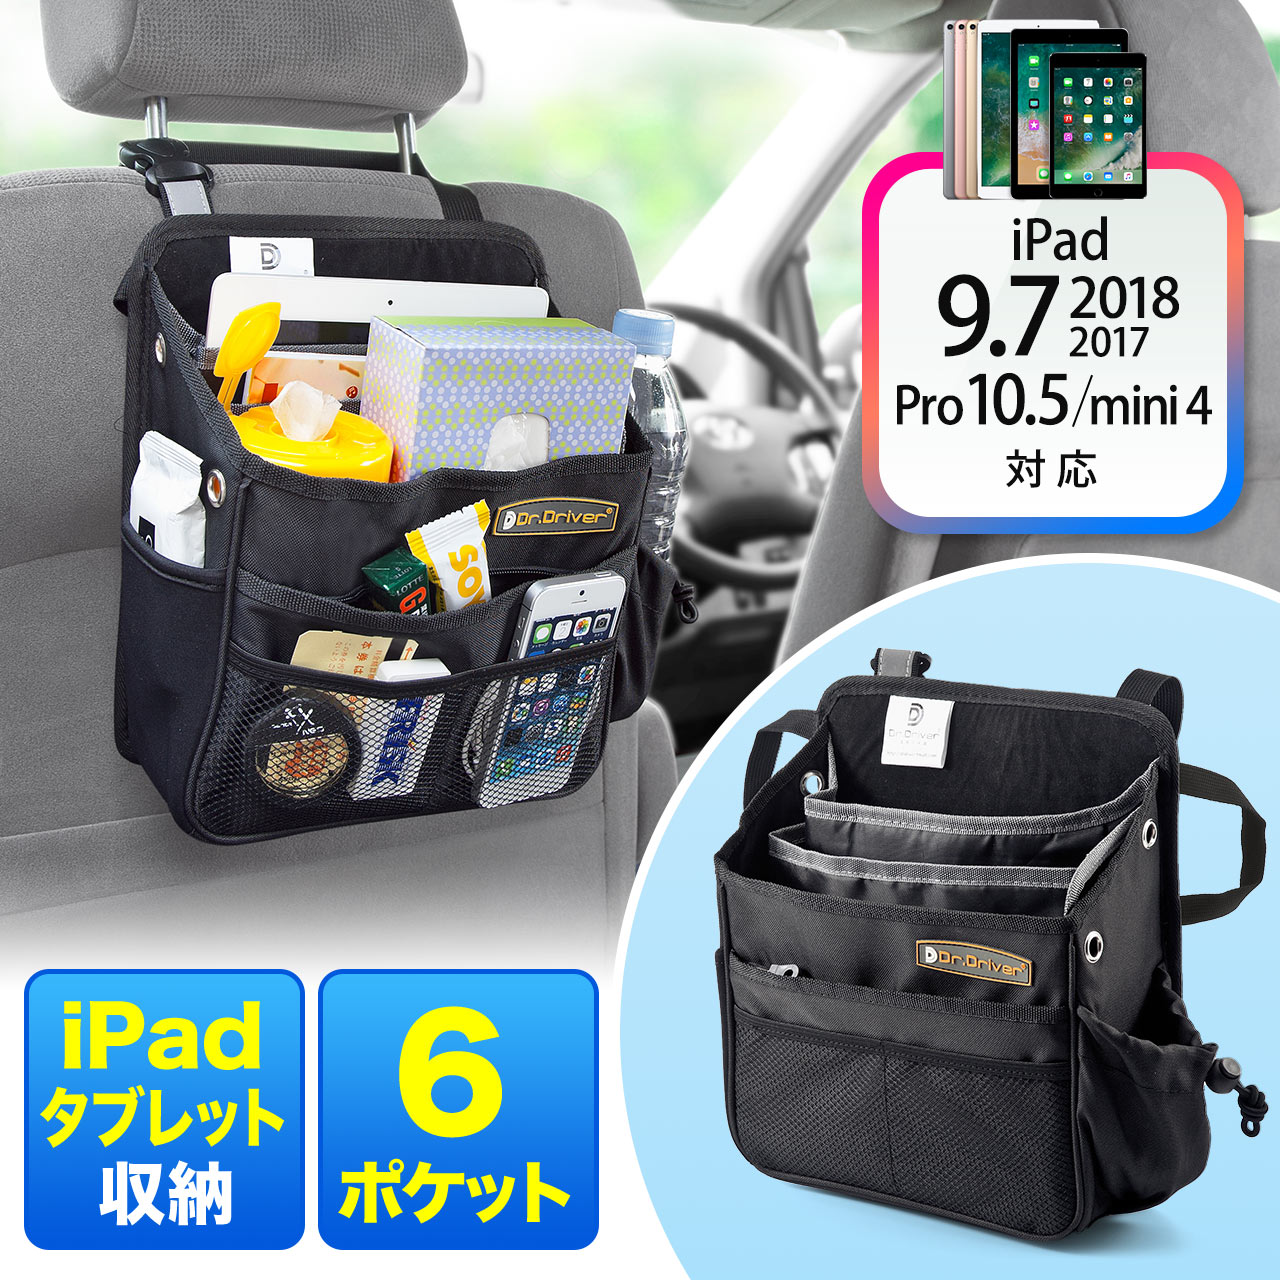 シートバックポケット 車用ポケット Ipad タブレット収納対応 6ポケット バックシートオーガナイザー 0 Car019の販売商品 通販ならサンワダイレクト